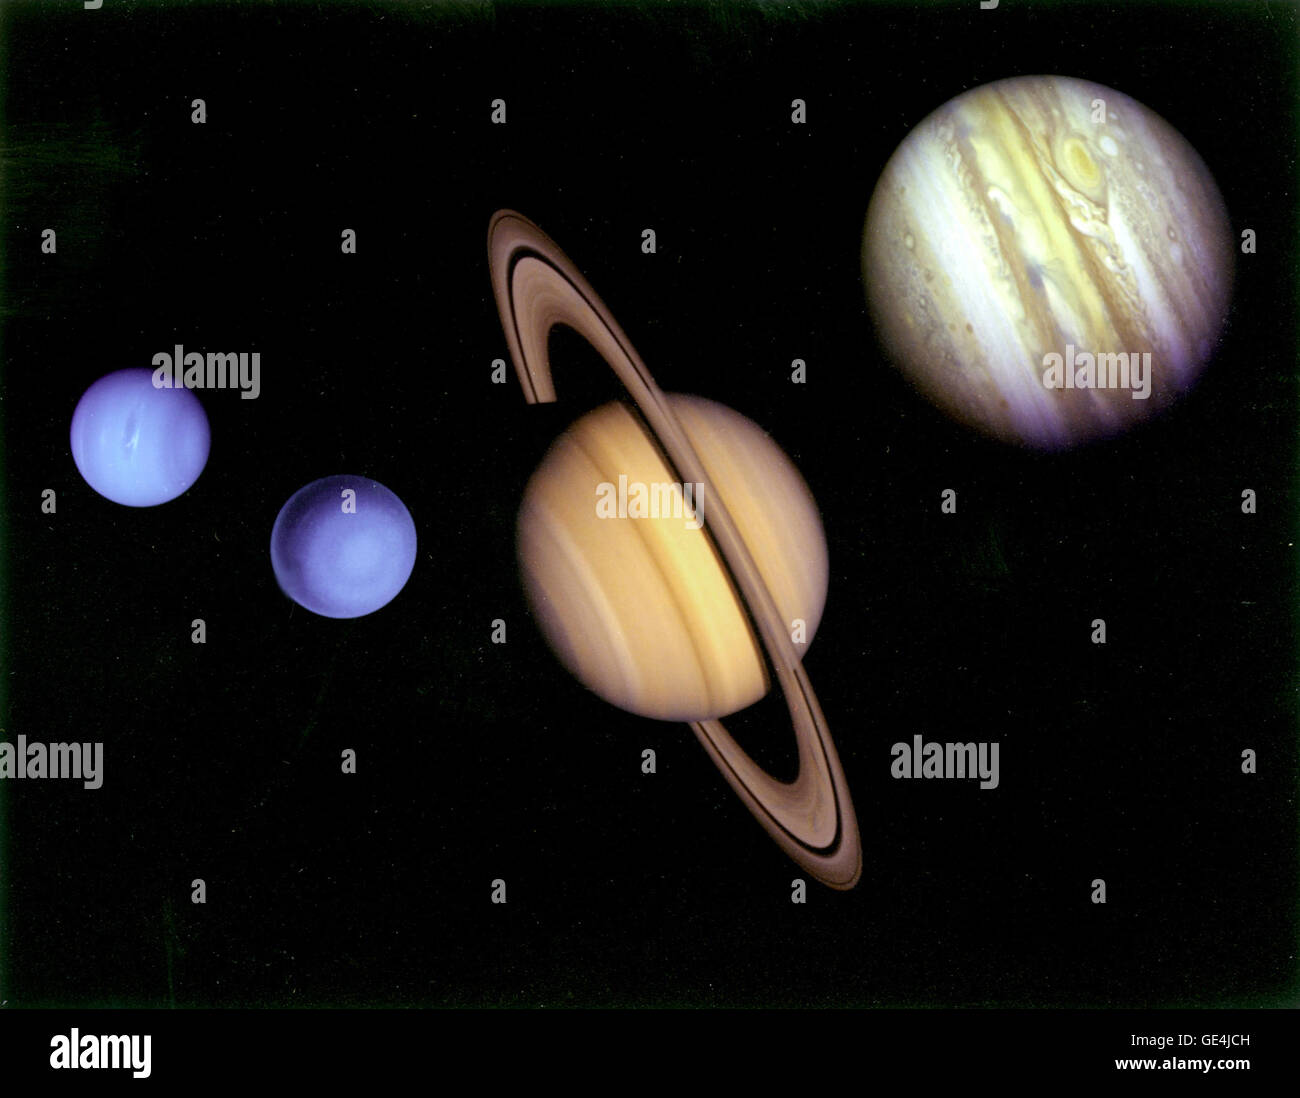 El montaje de las imágenes de los planetas visitados por el Voyager 2 fue preparada a partir de un ensamblaje de imágenes tomadas por la nave espacial Voyager 2. El proyecto es gestionado Voyager de la NASA en el Laboratorio de Propulsión a Chorro, Pasadena, California. Imagen # : PIA01483 Foto de stock